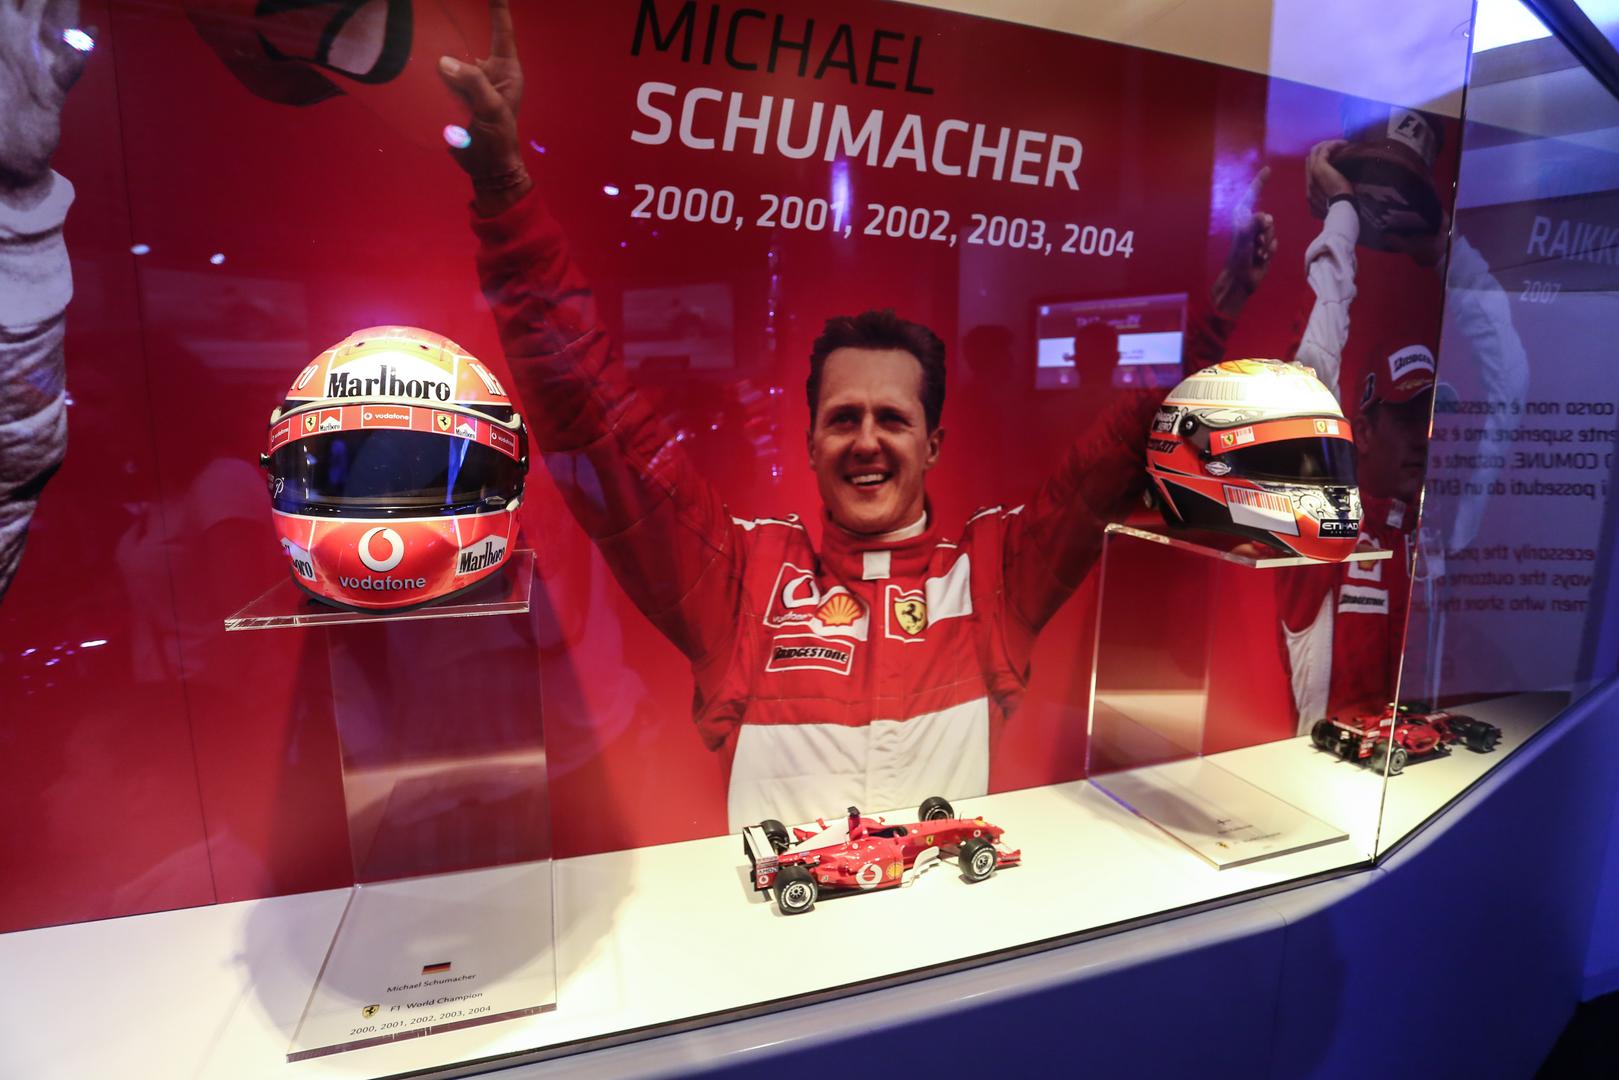  Njemački vozač Michael Schumacher dolazi 1996. u momčad Formule 1 te osvaja prvenstva 2000., 2001., 2002., 2003. i 2004.